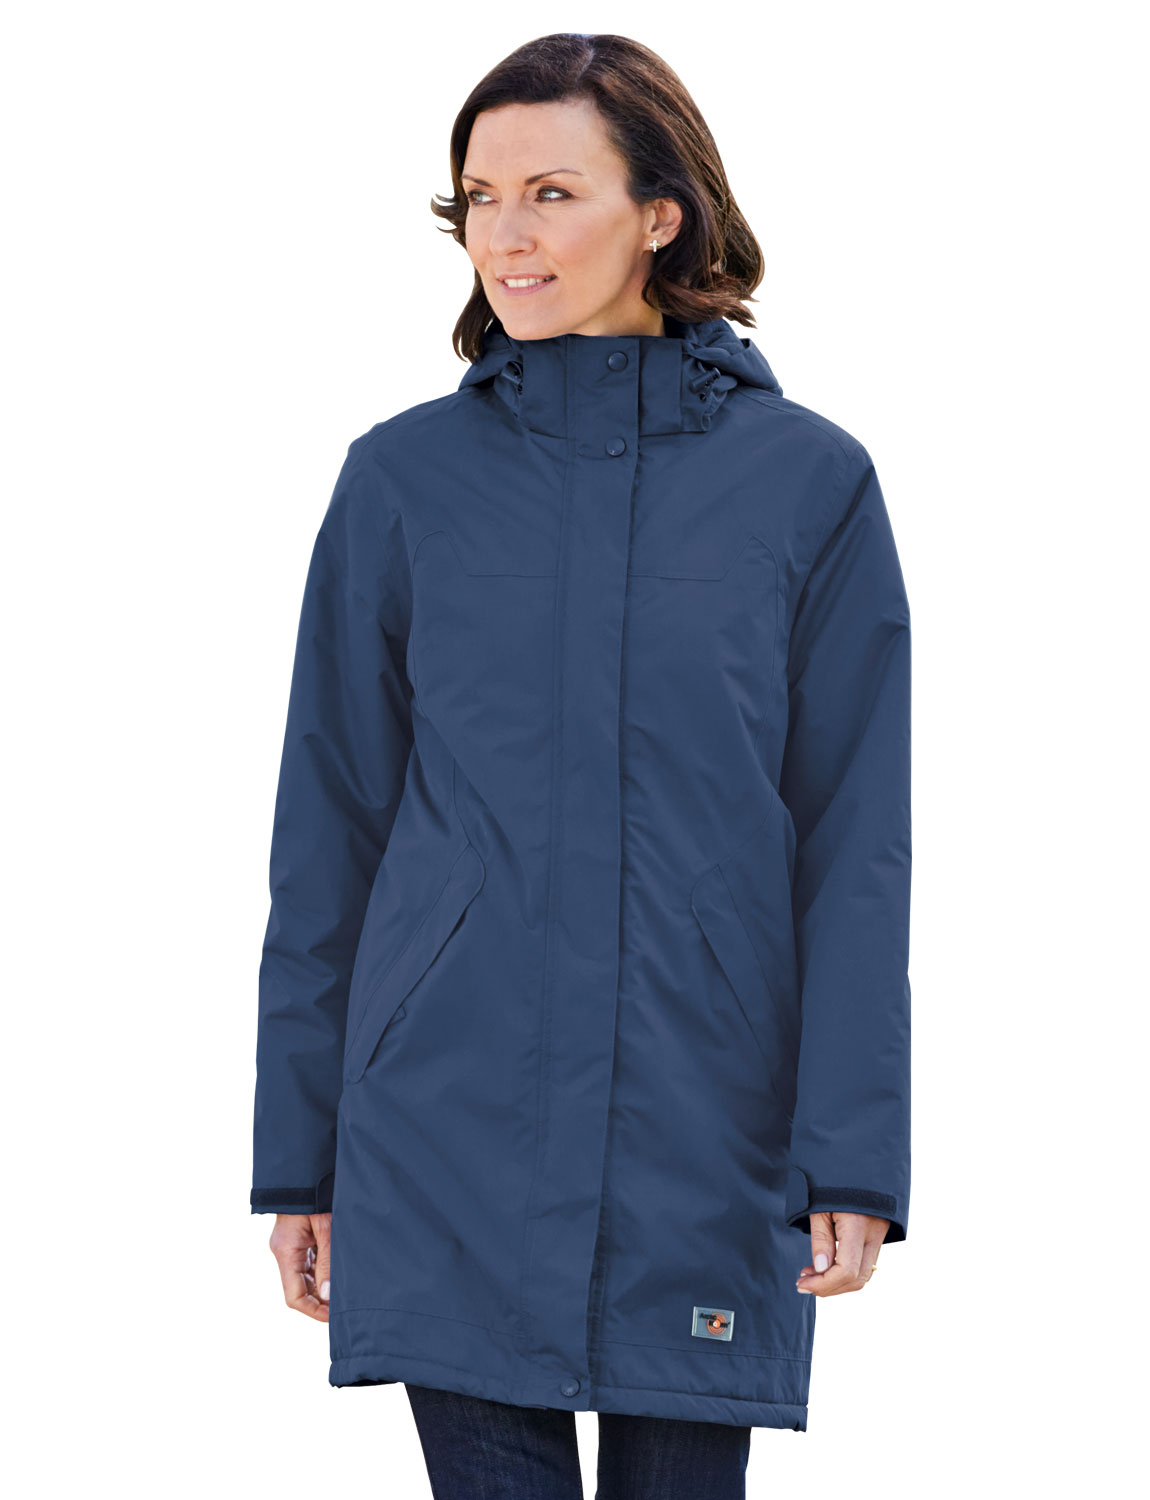 Ladies Waterproof Arctic Storm Jacket Coat | eBay